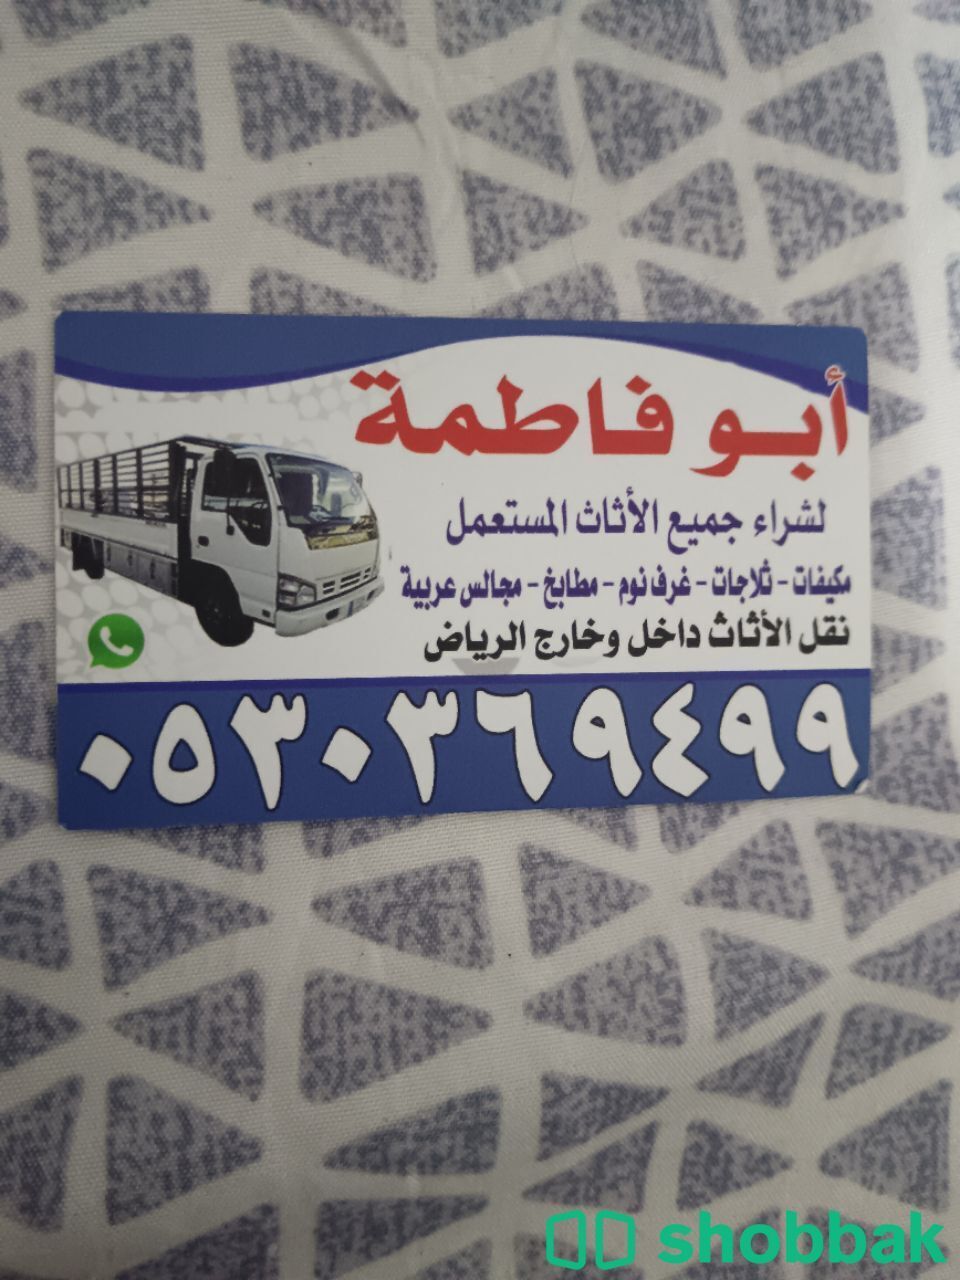 شراء أثاث مستعمل حي الشفاء 0530369499  Shobbak Saudi Arabia